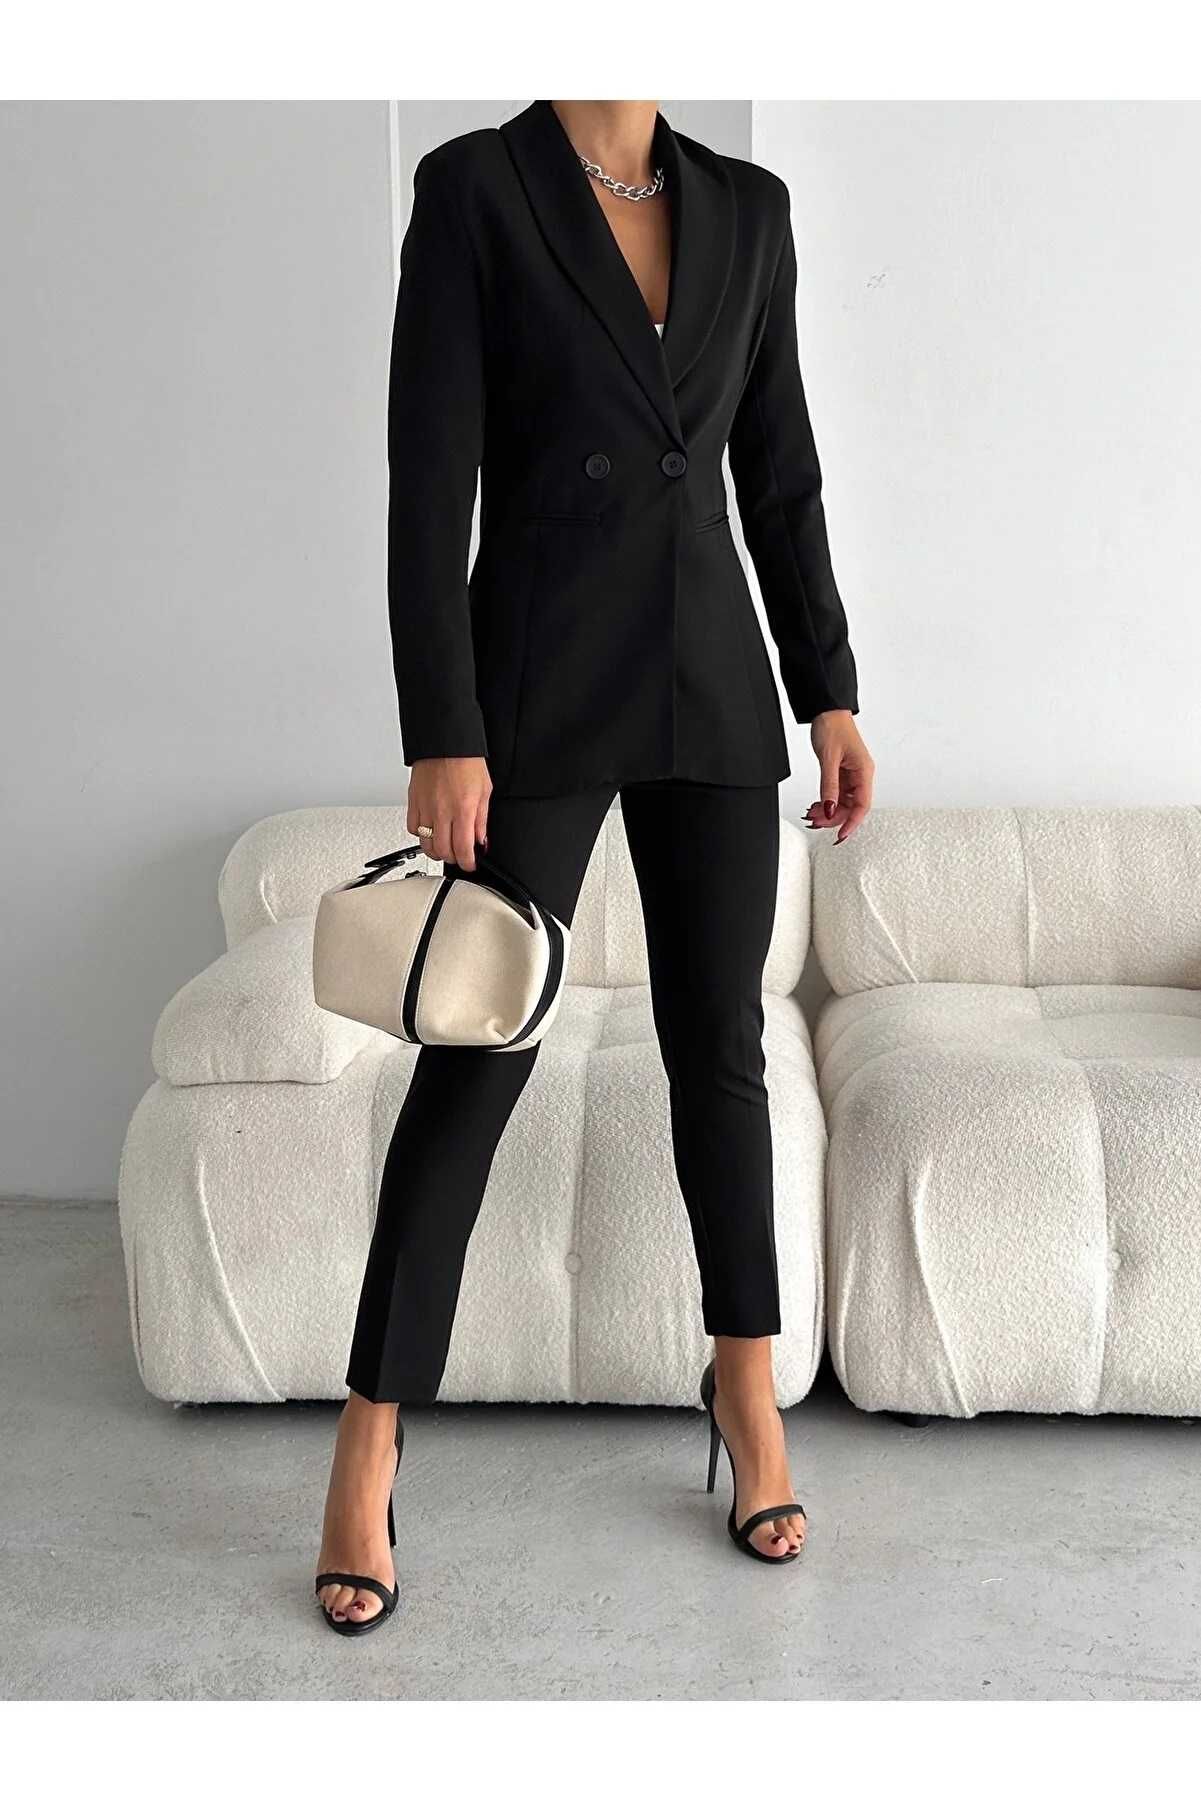 Дамски костюм с панталон и сако, Vitalite, Черен (S-M-L-XL-2XL-3XL)